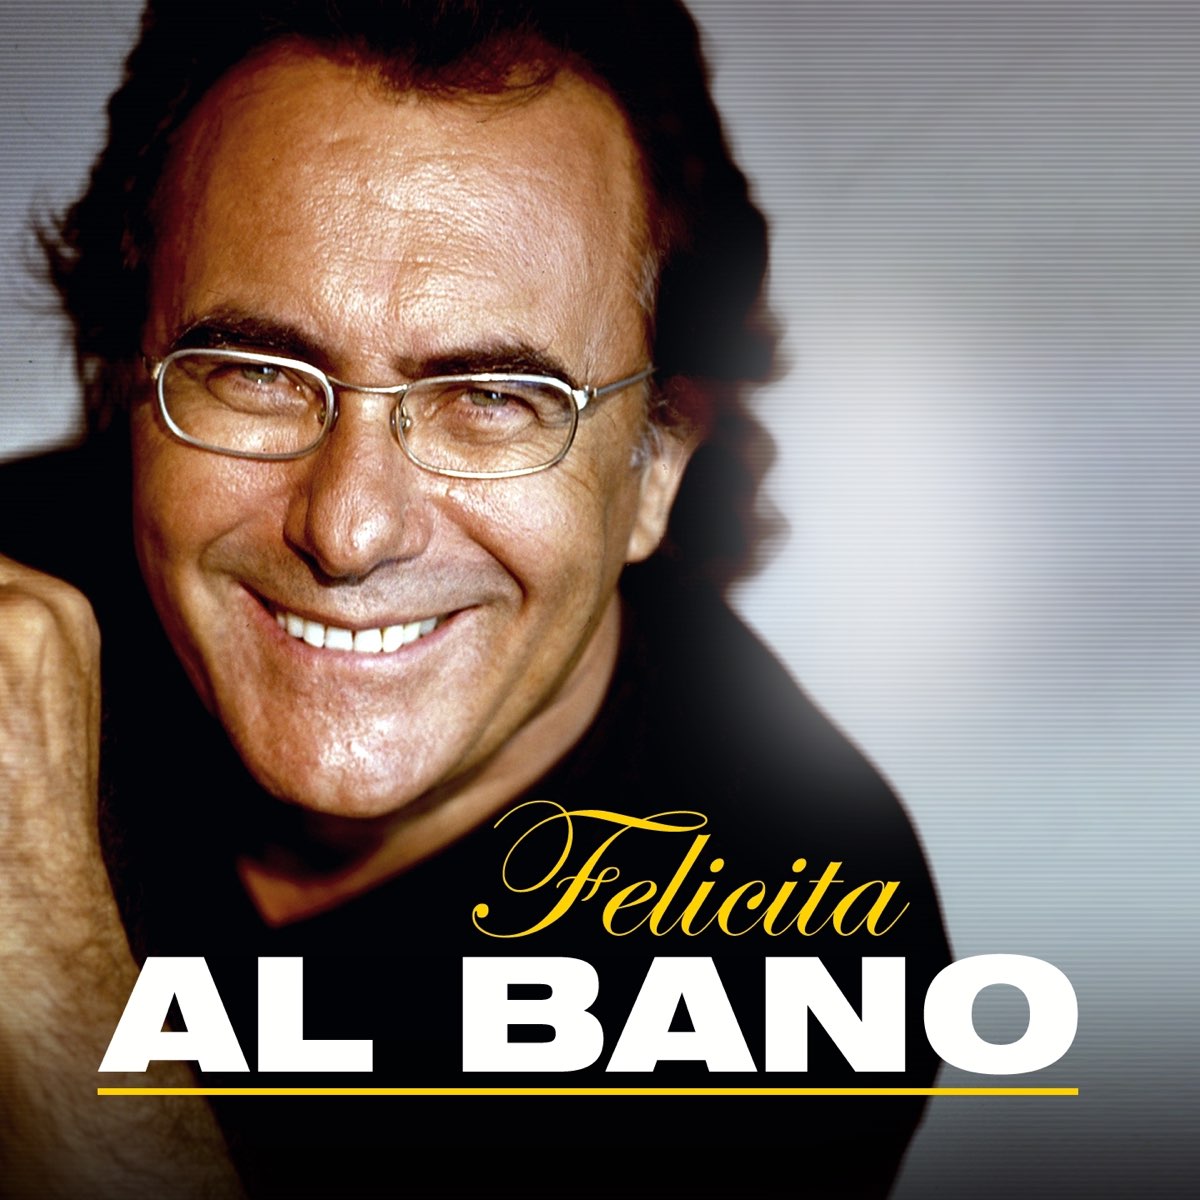 Слушать итальянские хиты 90. Аль Бано. Итальянский певец Альбано. Аль Бано фото. Al bano poster.